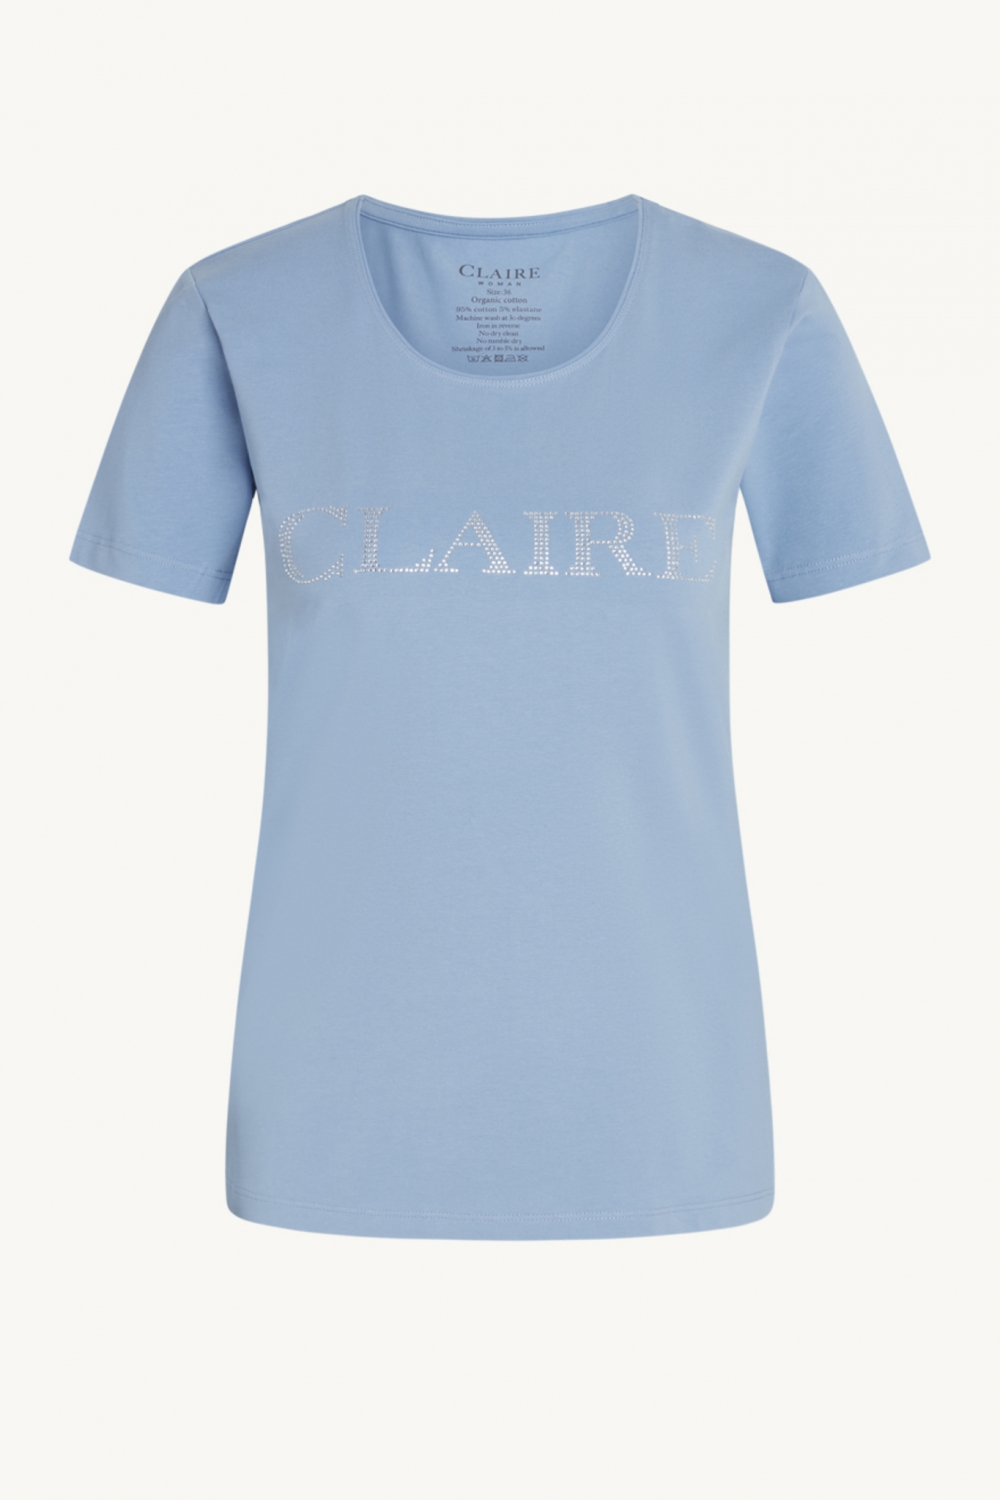 Klassisk T-skjorte med korte ermer og rund hals. Claires logo er plassert på brystet i små strass. Claire basic. Dette produktet er sertifisert med Contains Organic Cotton. 95% Cotton 5% Elastane

